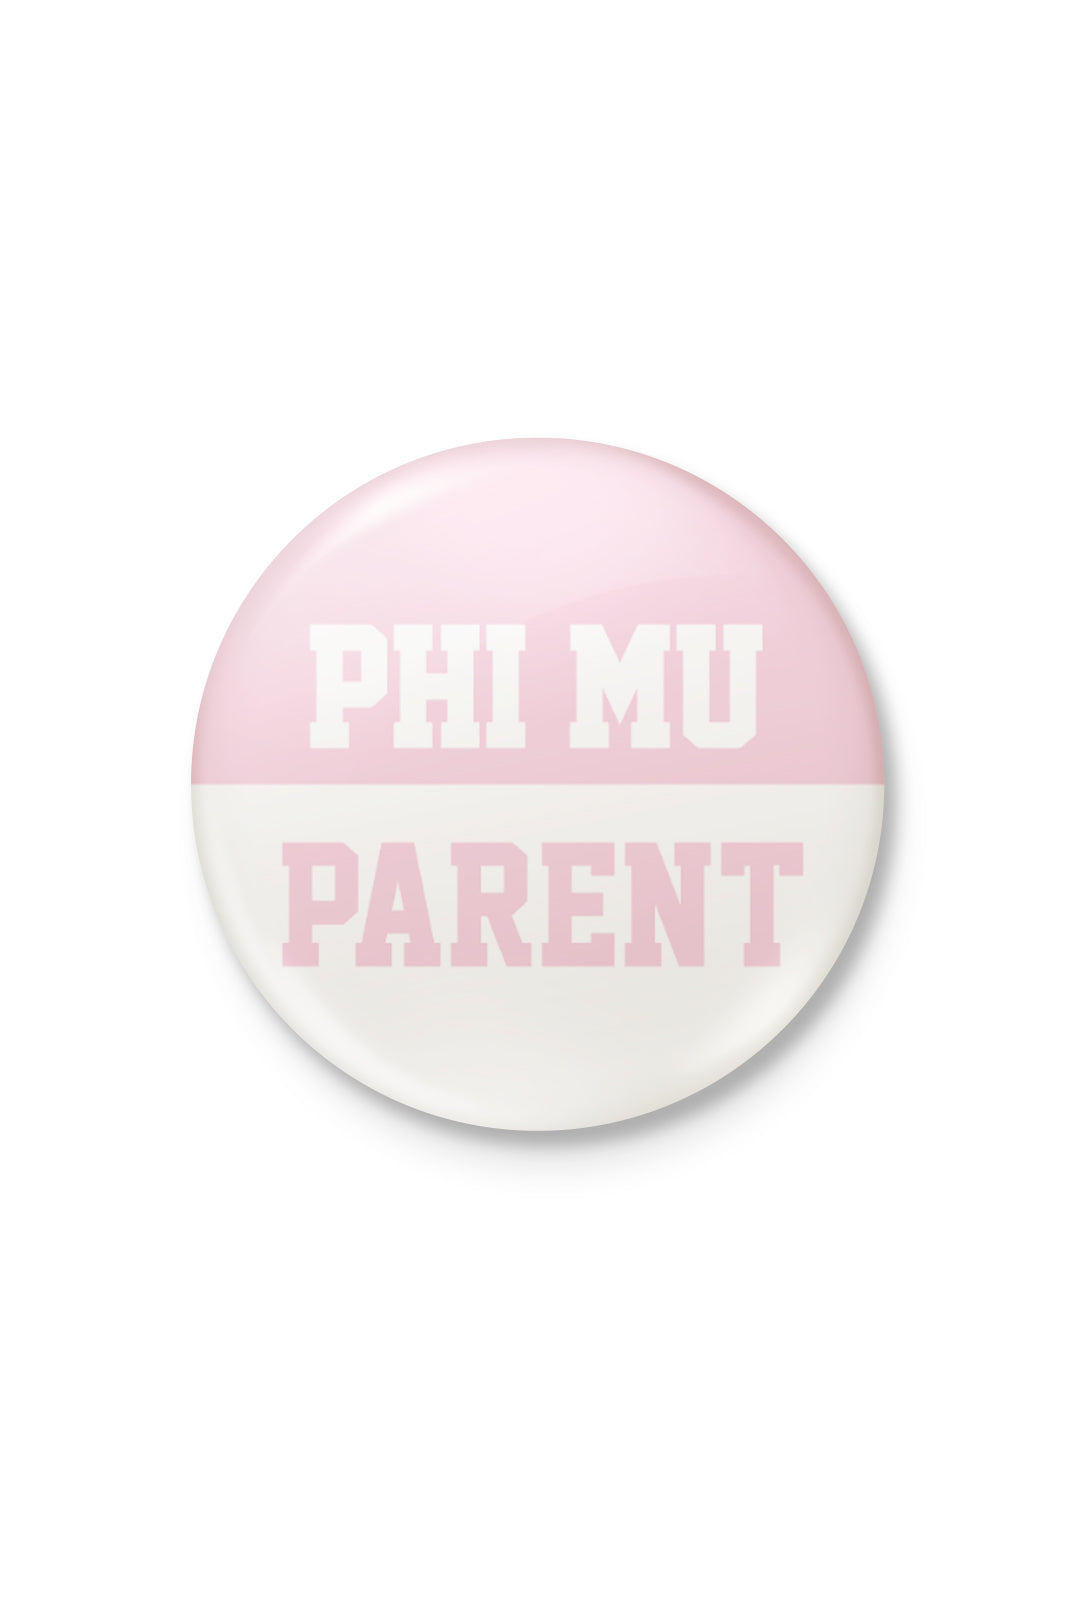 Phi Mu Parent Button